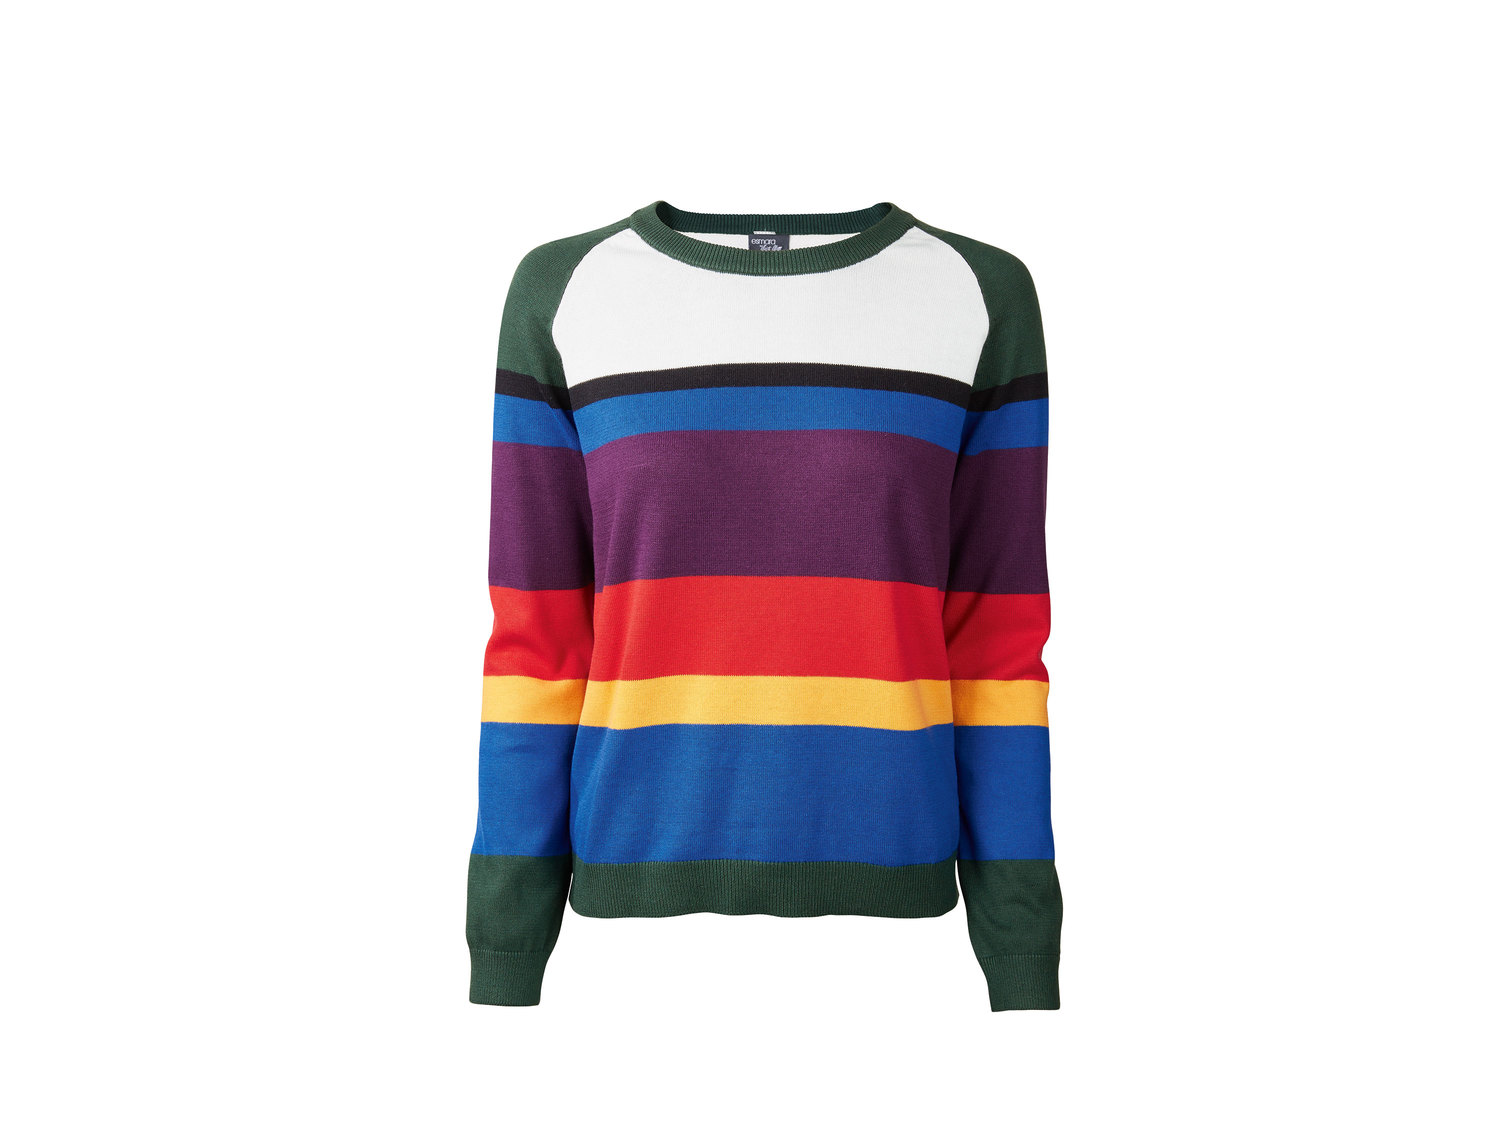 Sweter Esmara, cena 39,99 PLN 
- 100% bawełny
- miękki i delikatny
- rozmiary: ...